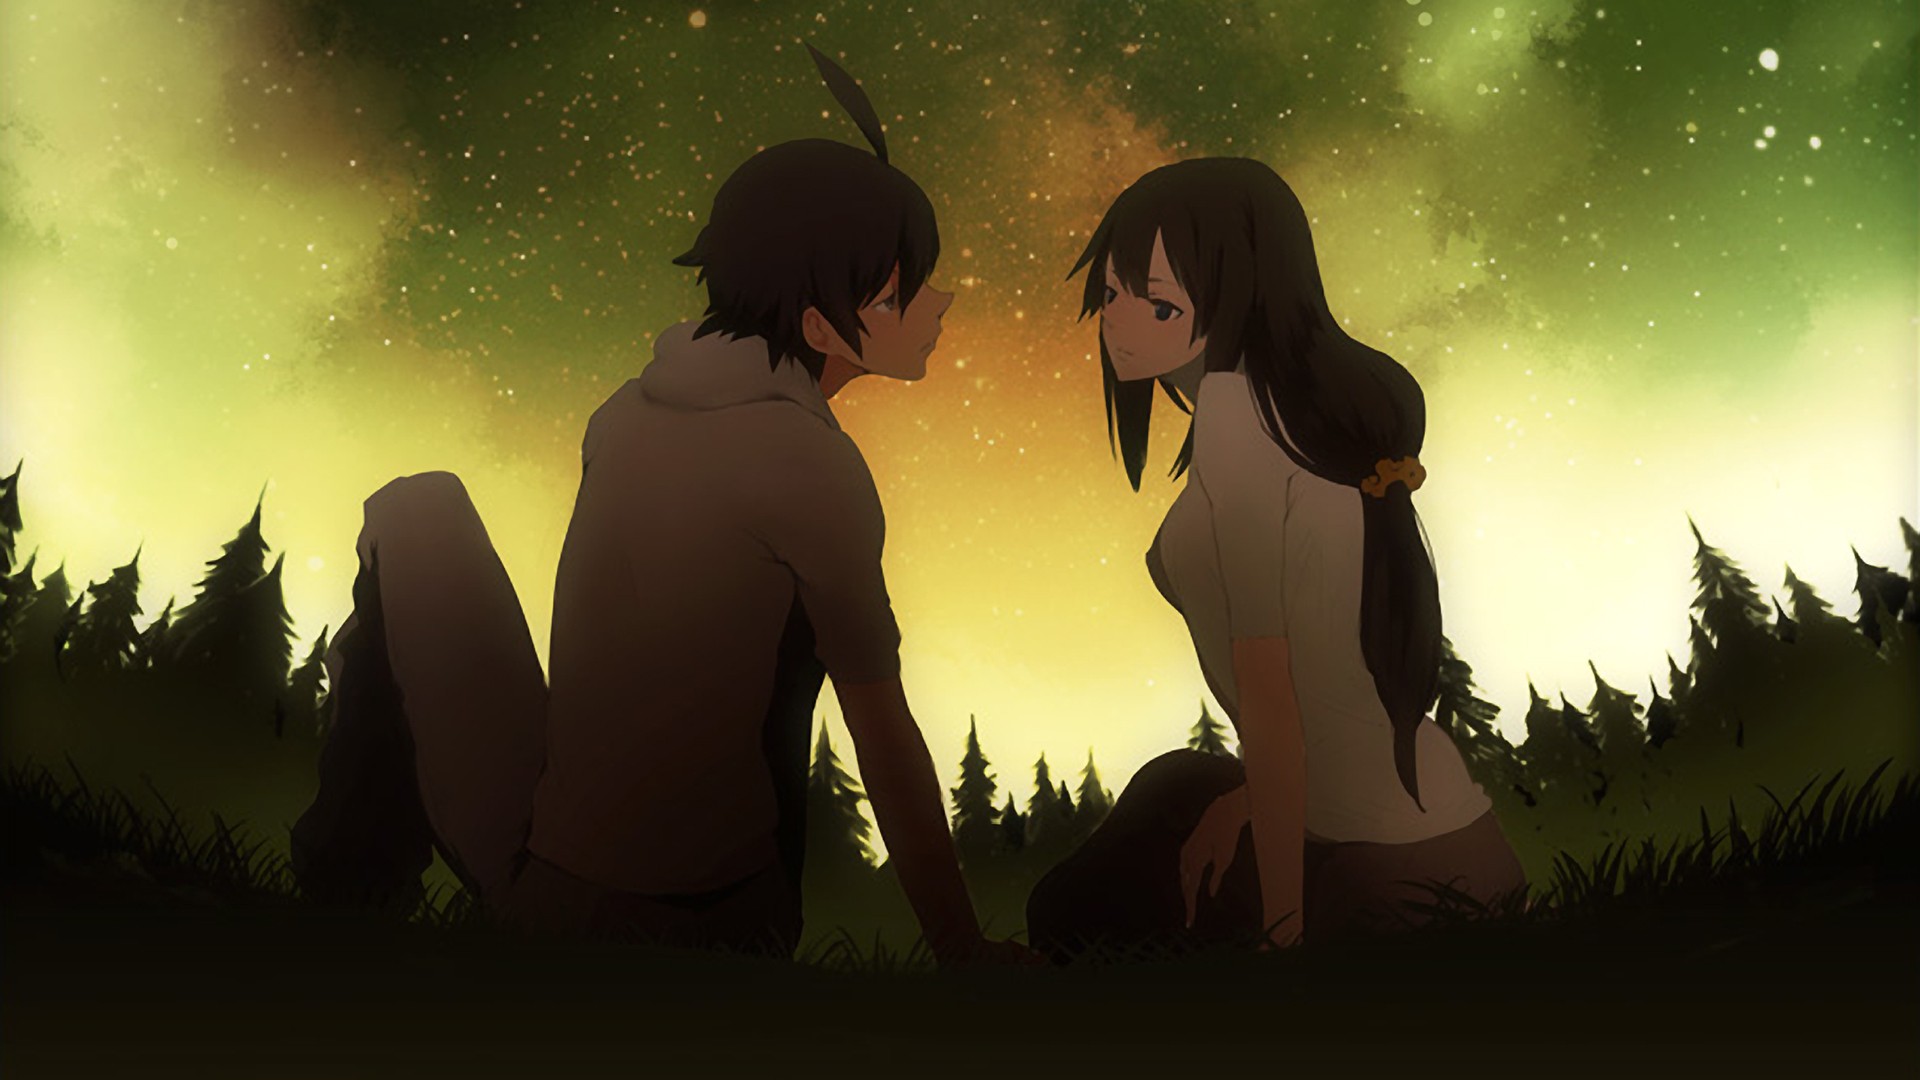 Cute Anime  Couple  HD  Wallpapers  PixelsTalk Net